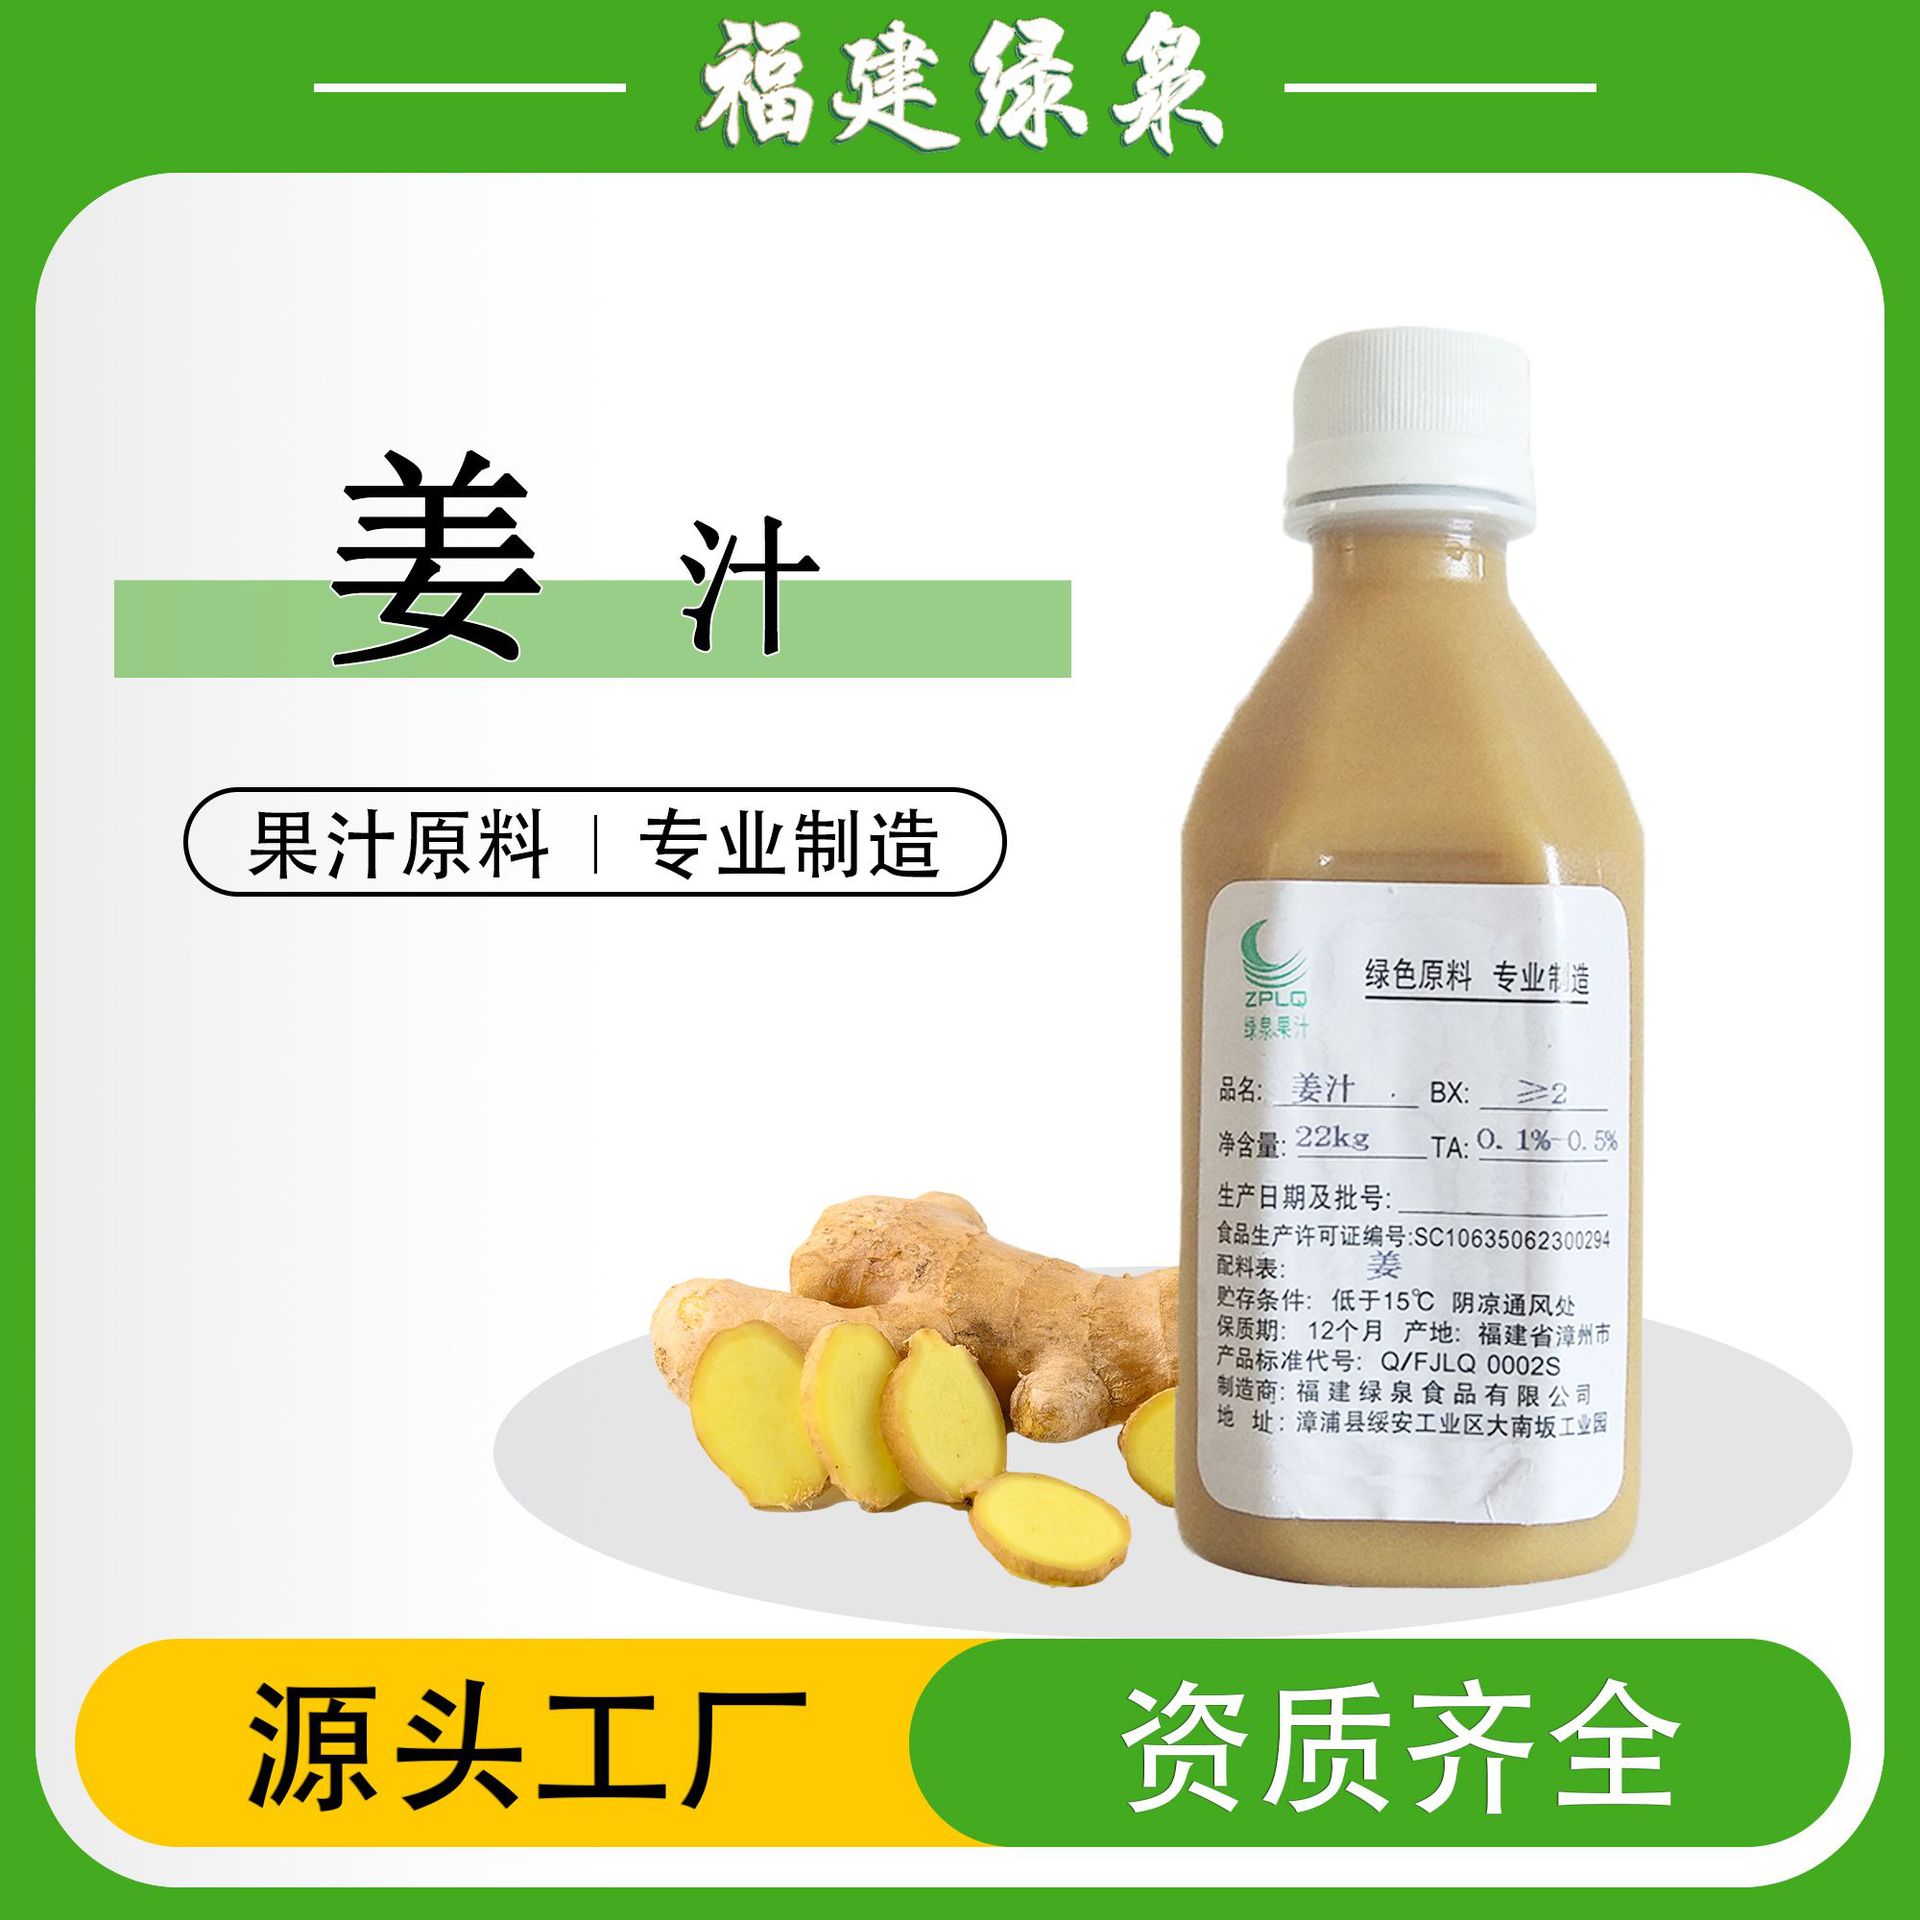 供应NFC姜汁2BX/姜浓缩汁/红枣浓缩汁/复合果蔬汁/胡萝卜浓缩汁